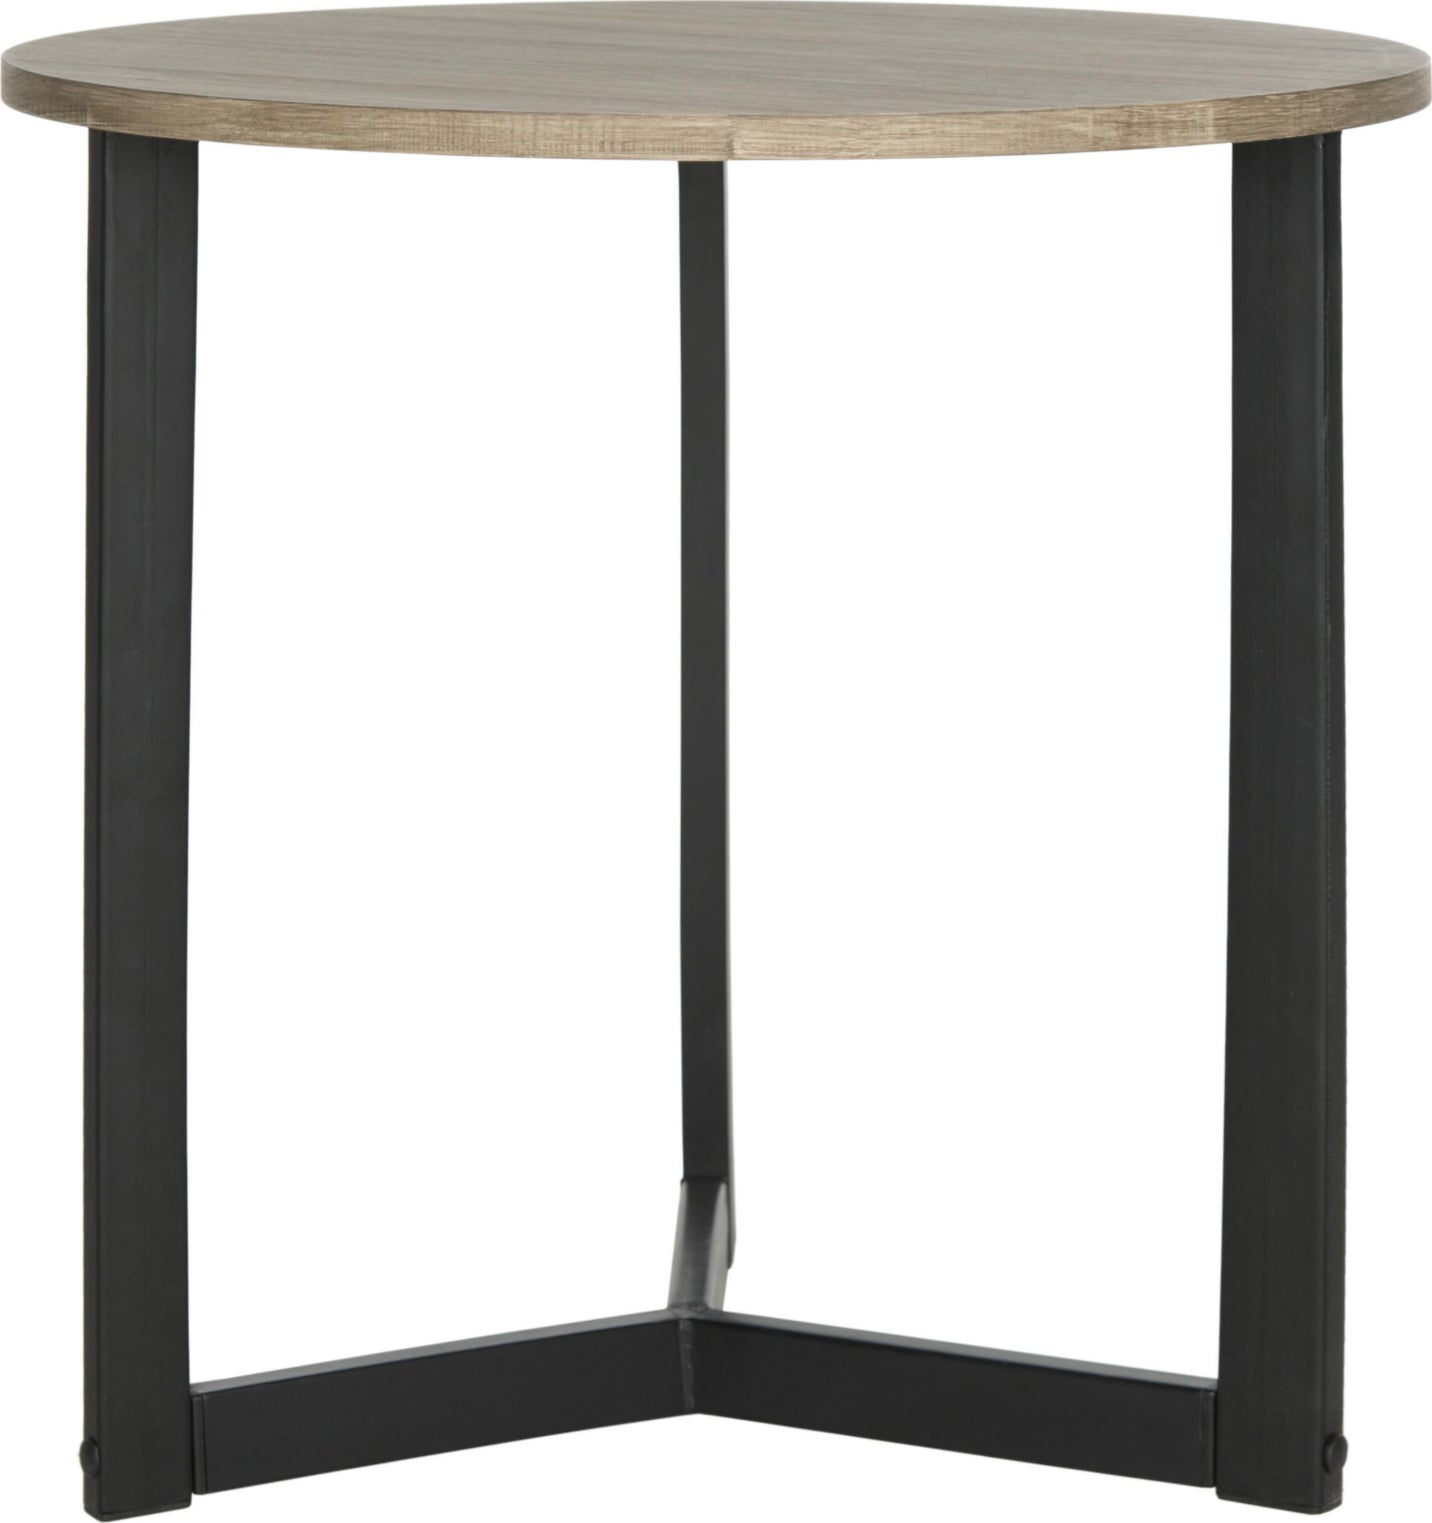 Safavieh Leonard Mid Century Modern Wood End Table Oak and Black Furniture main image